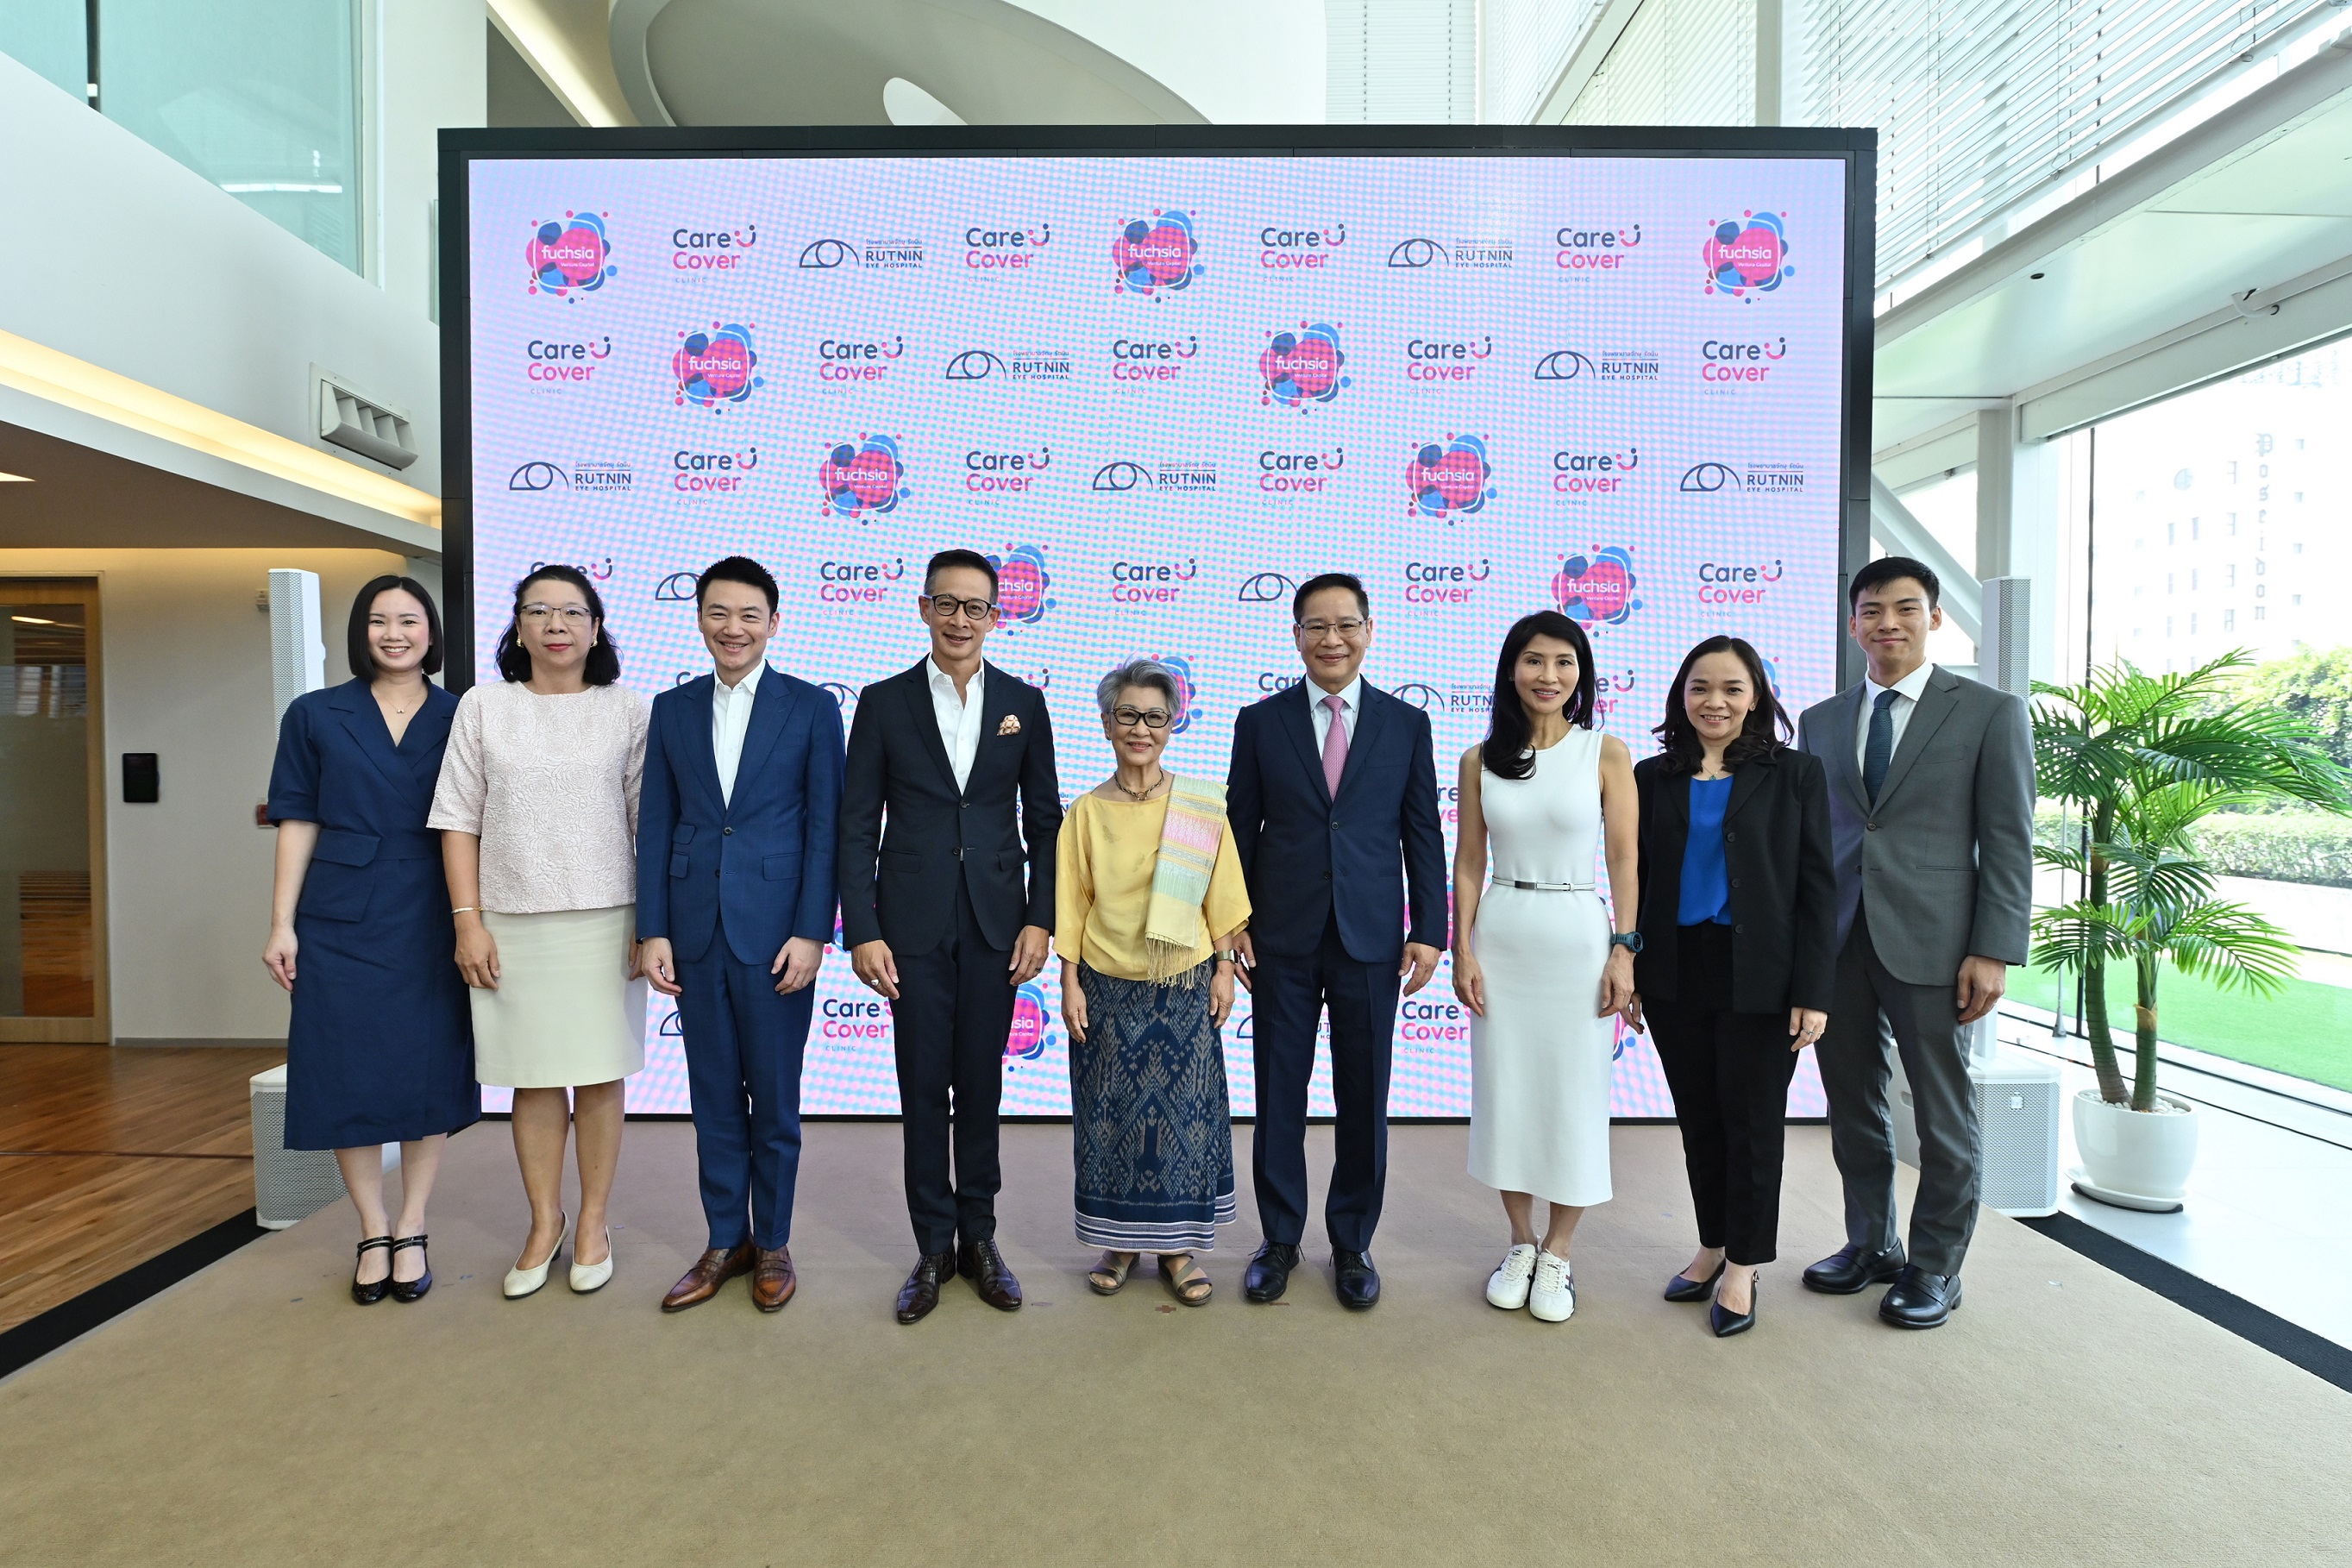 Fuchsia Venture Capital จับมือ โรงพยาบาลจักษุ รัตนิน เปิดตัว “แคร์คัฟเวอร์ สหคลินิก” ทางเลือกใหม่สำหรับการรักษาระดับปฐมภูมิ (Primary Care) ในประเทศไทย